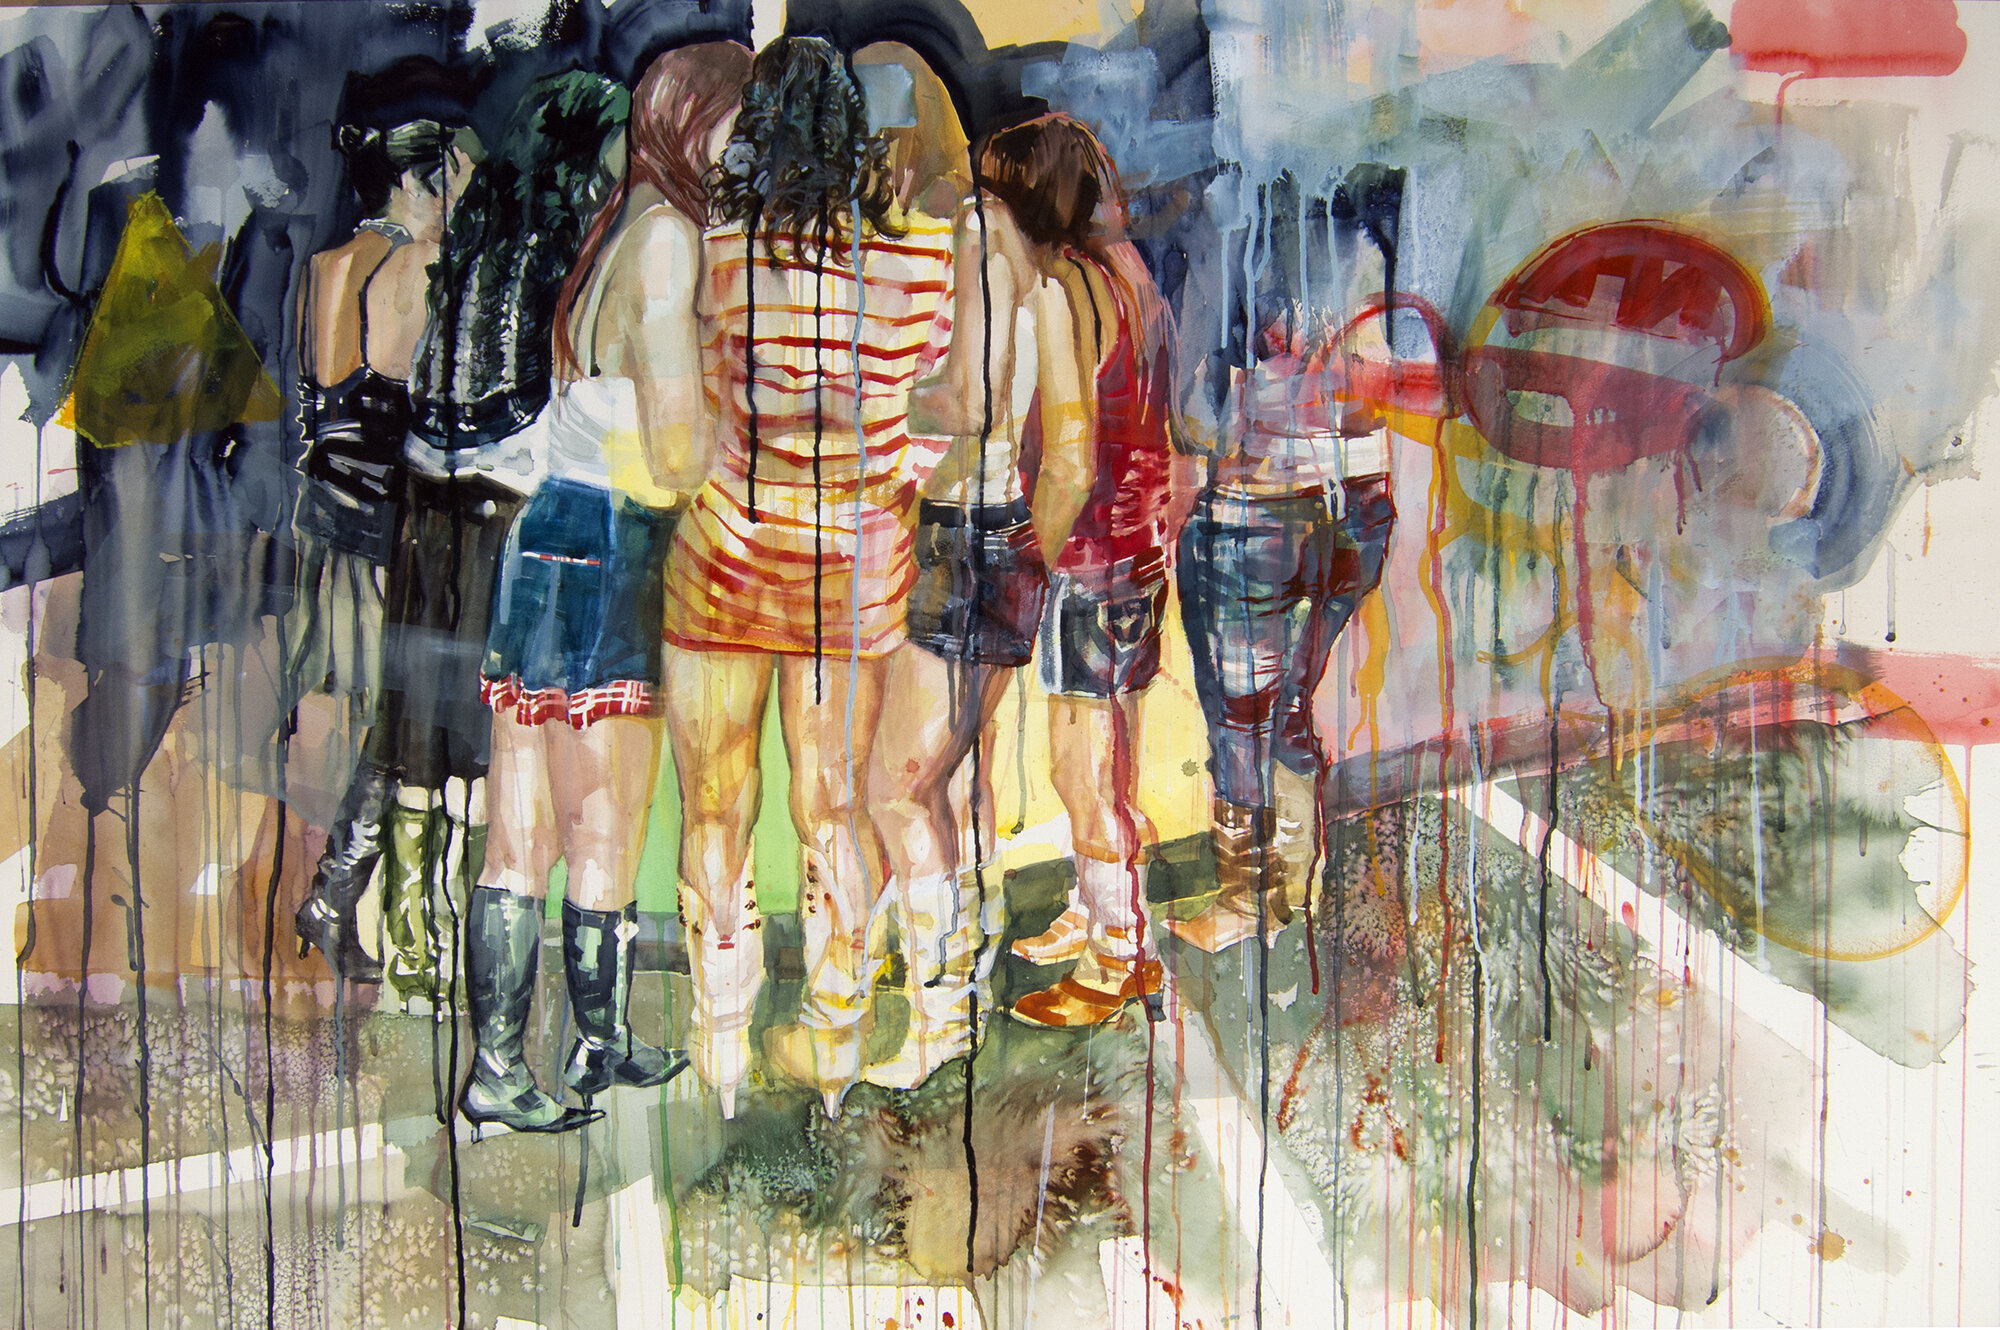 hot nights wet dreams 4, watercolor, 36"x54", 2014